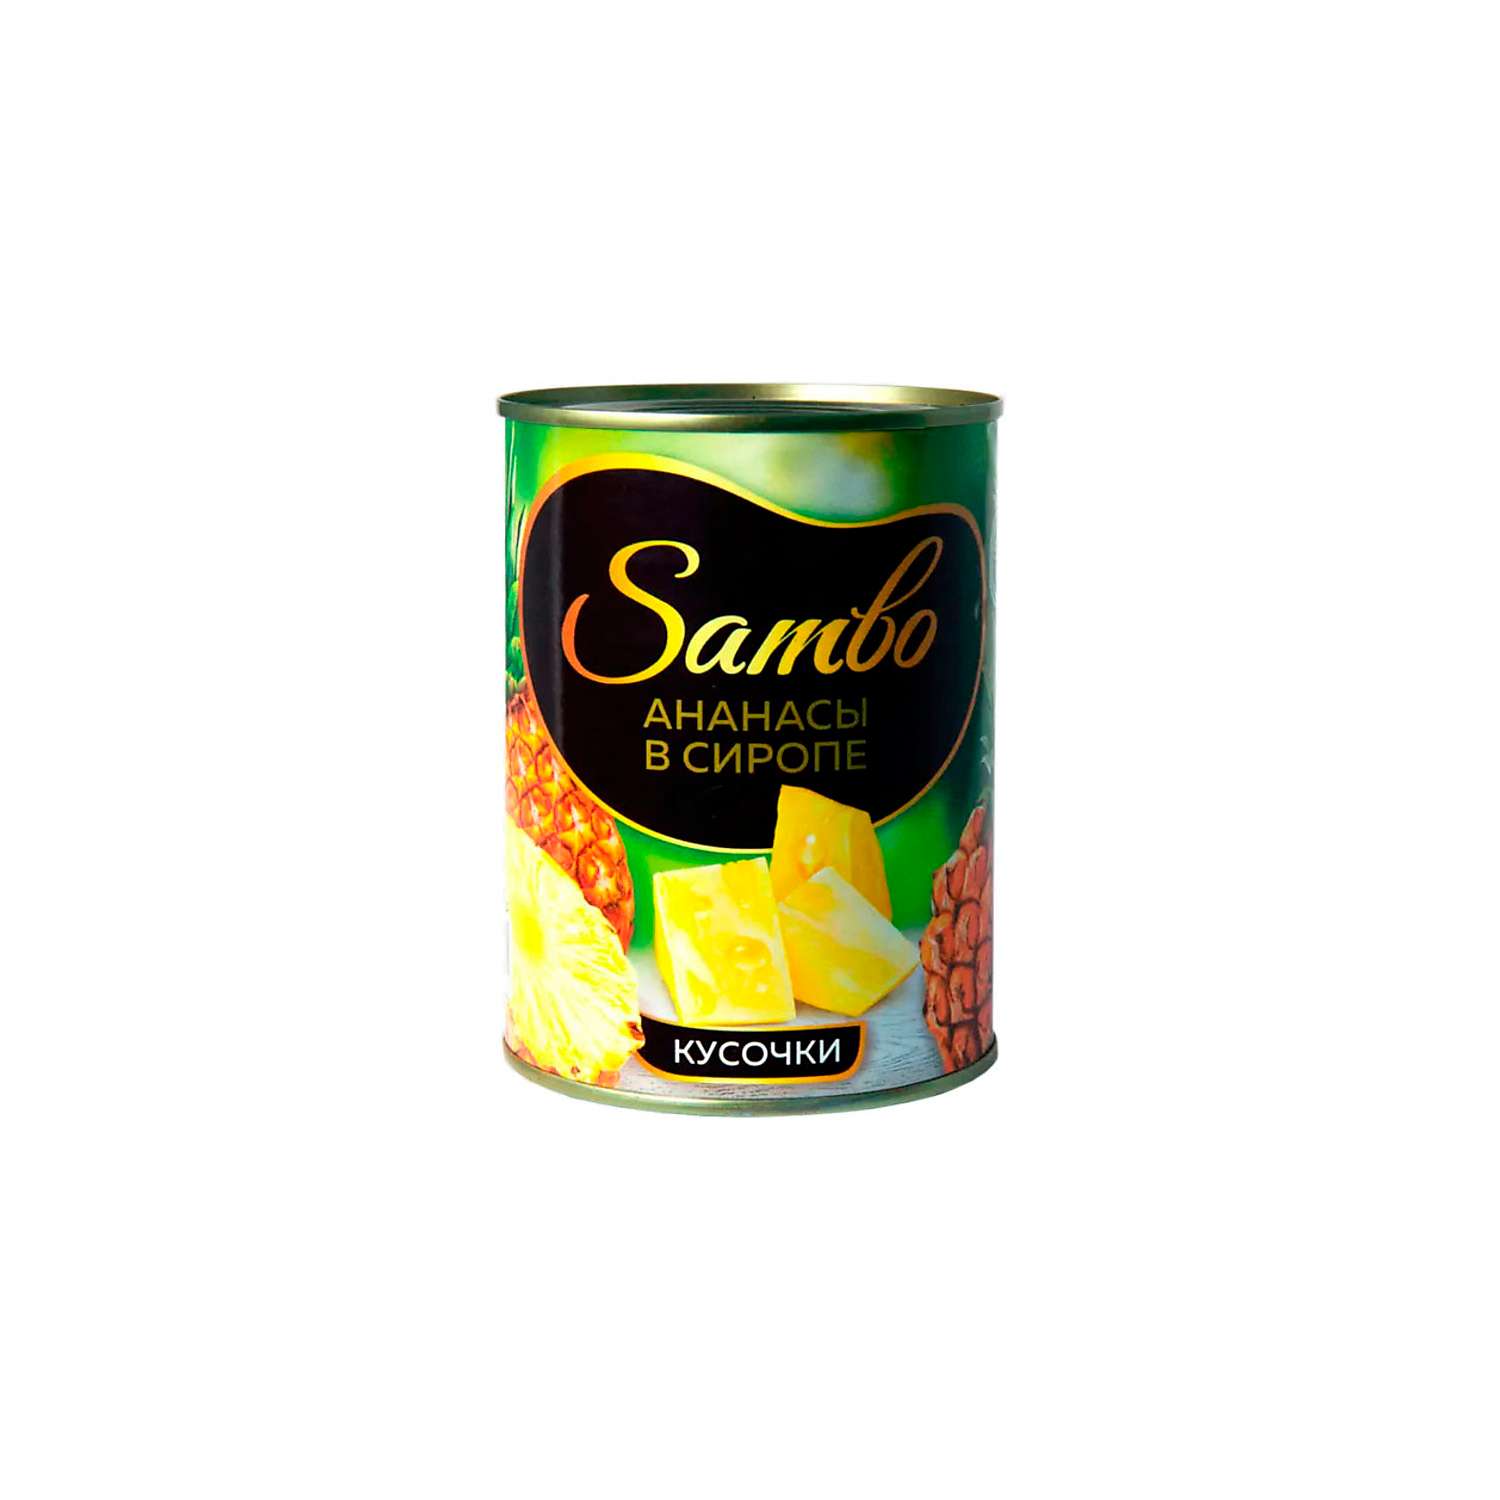 Консервация KDV Sambo ананасы в сиропе консервированные кусочки 565 г 3 шт - фото 1